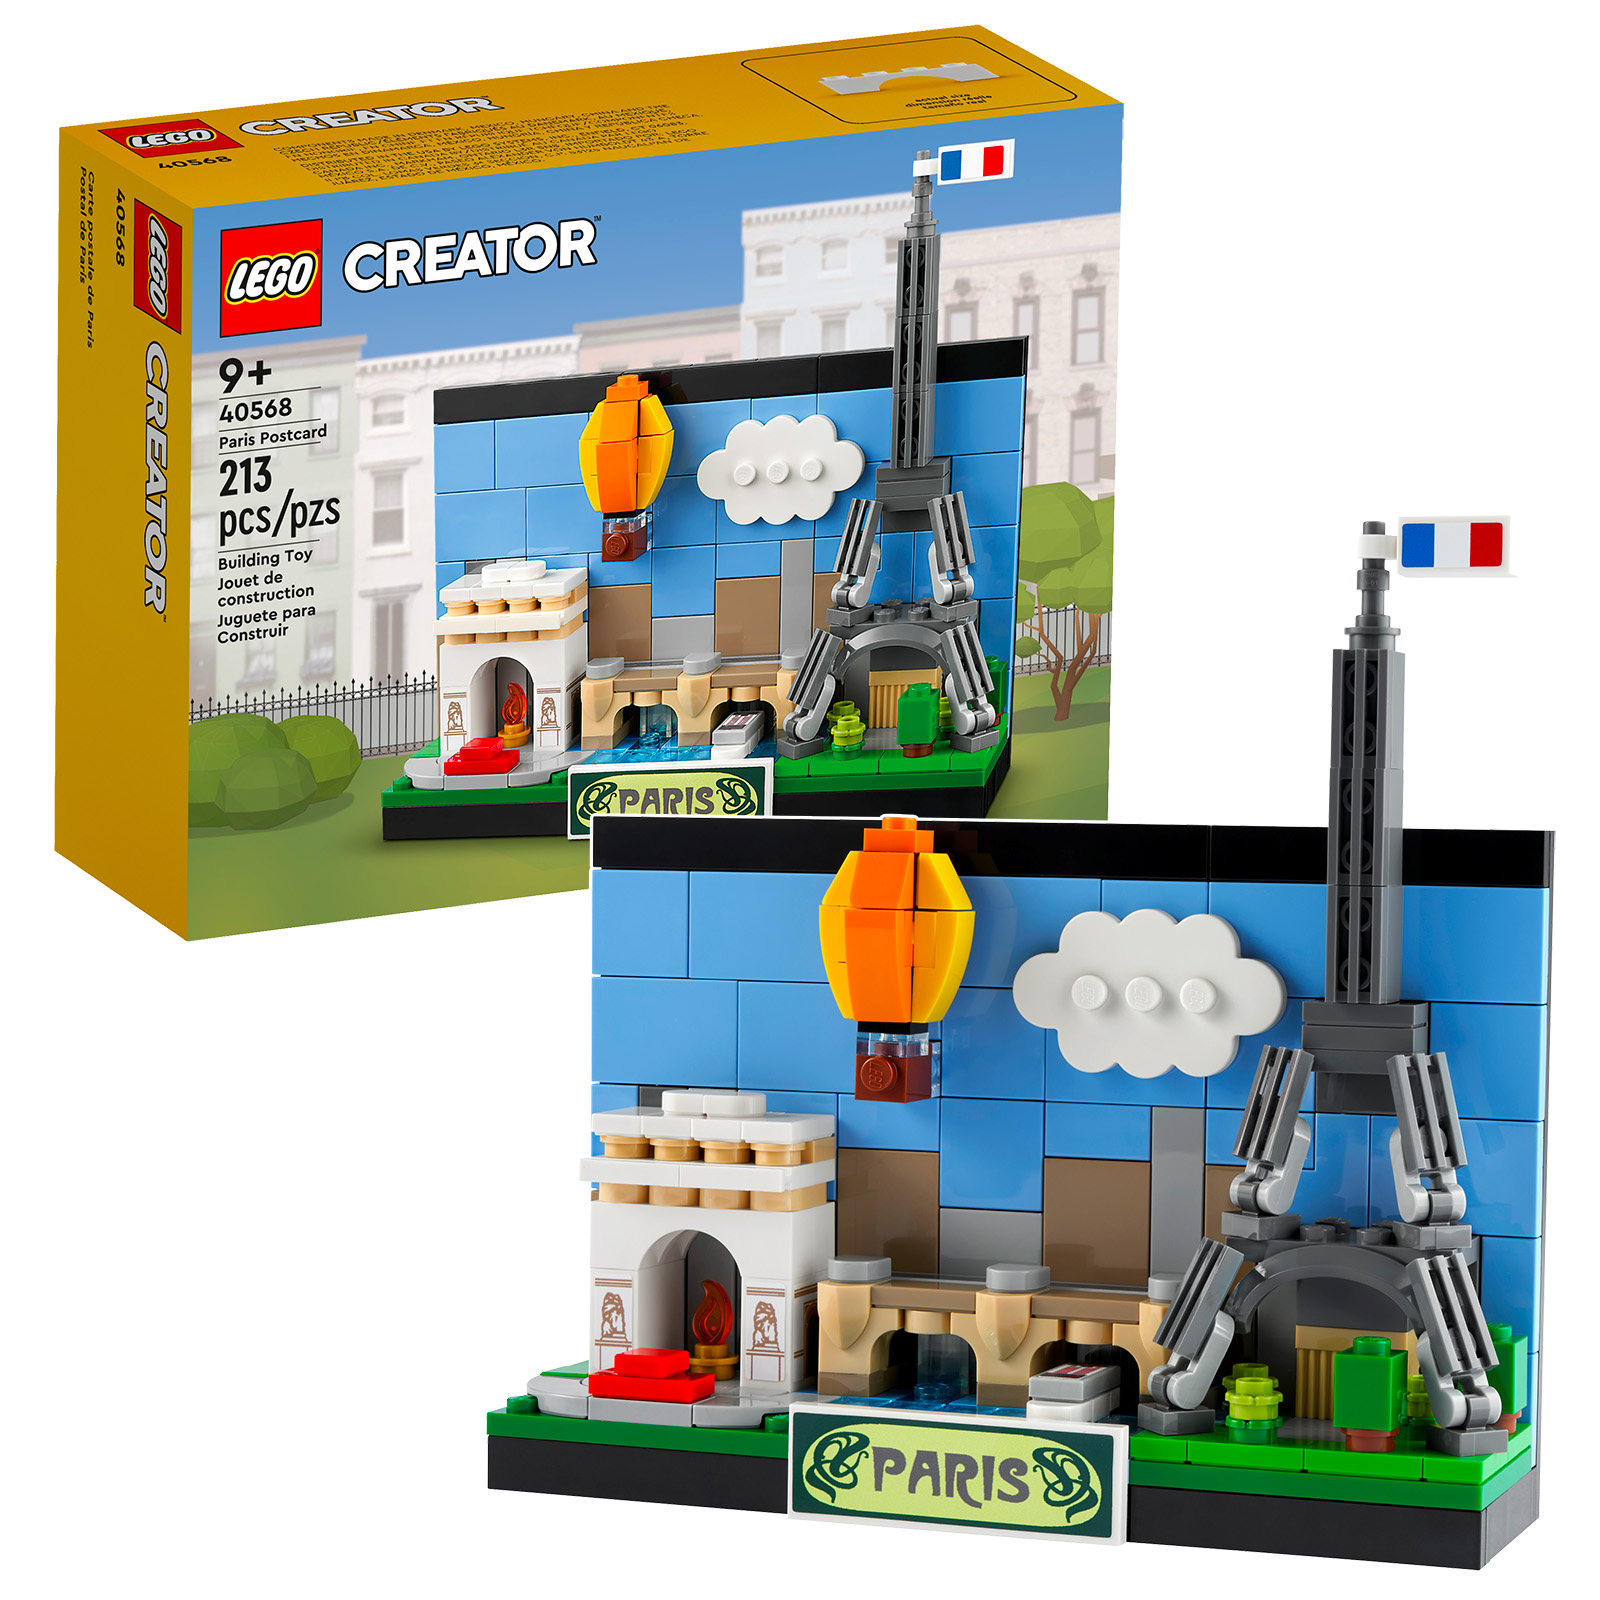 Nye LEGO Creator 2022-utgivelser: 40568 Paris-postkort og 40569 London-postkort